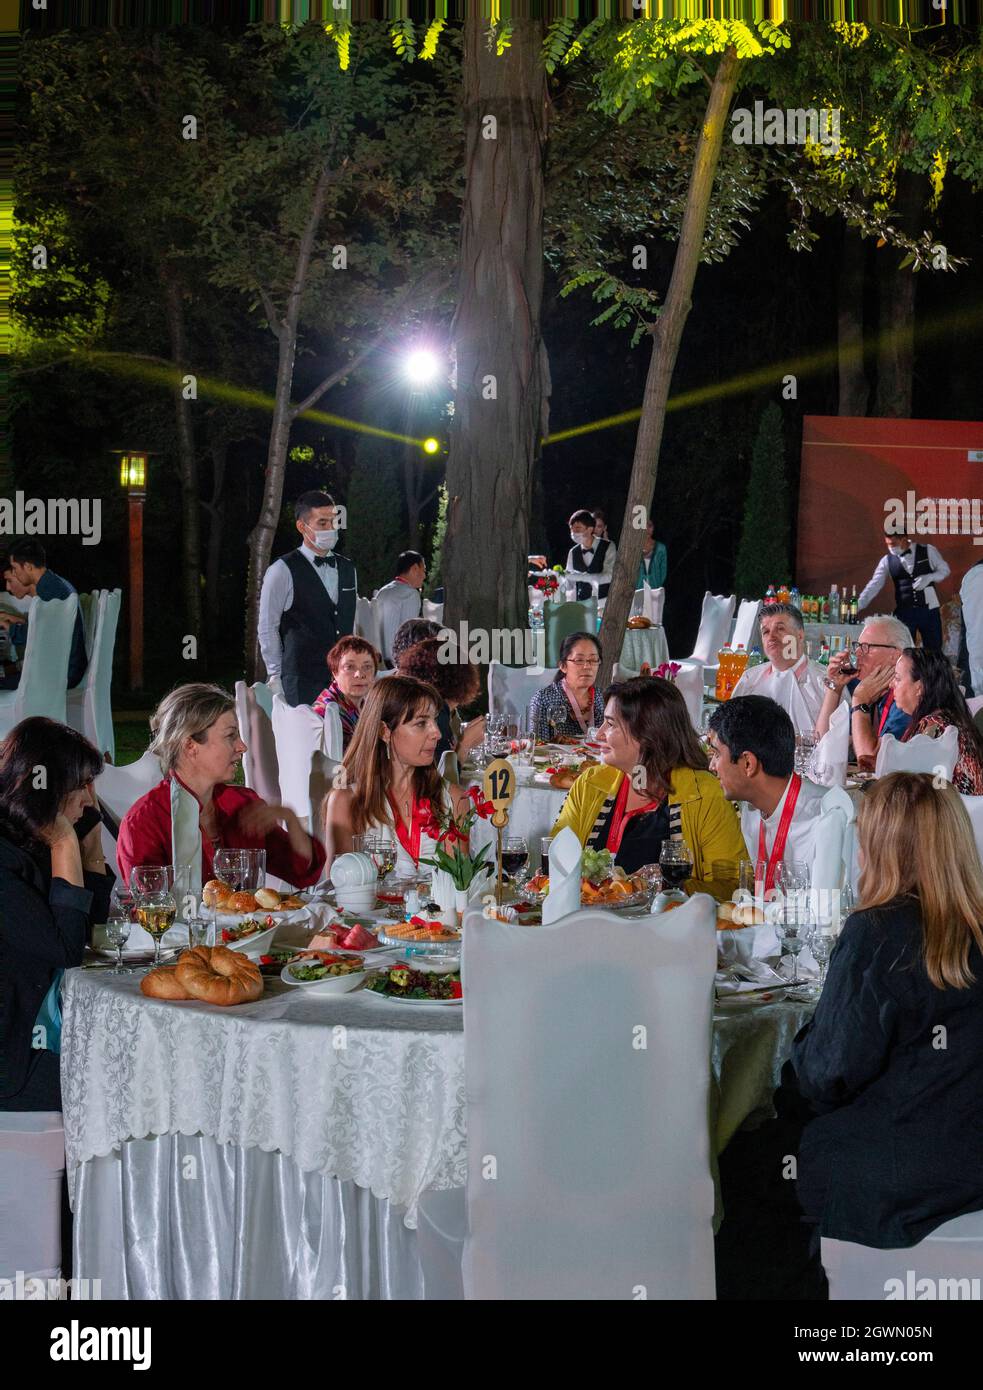 Les délégués à la conférence au dîner de gala à l'extérieur, Tachkent, Ouzbékistan Banque D'Images